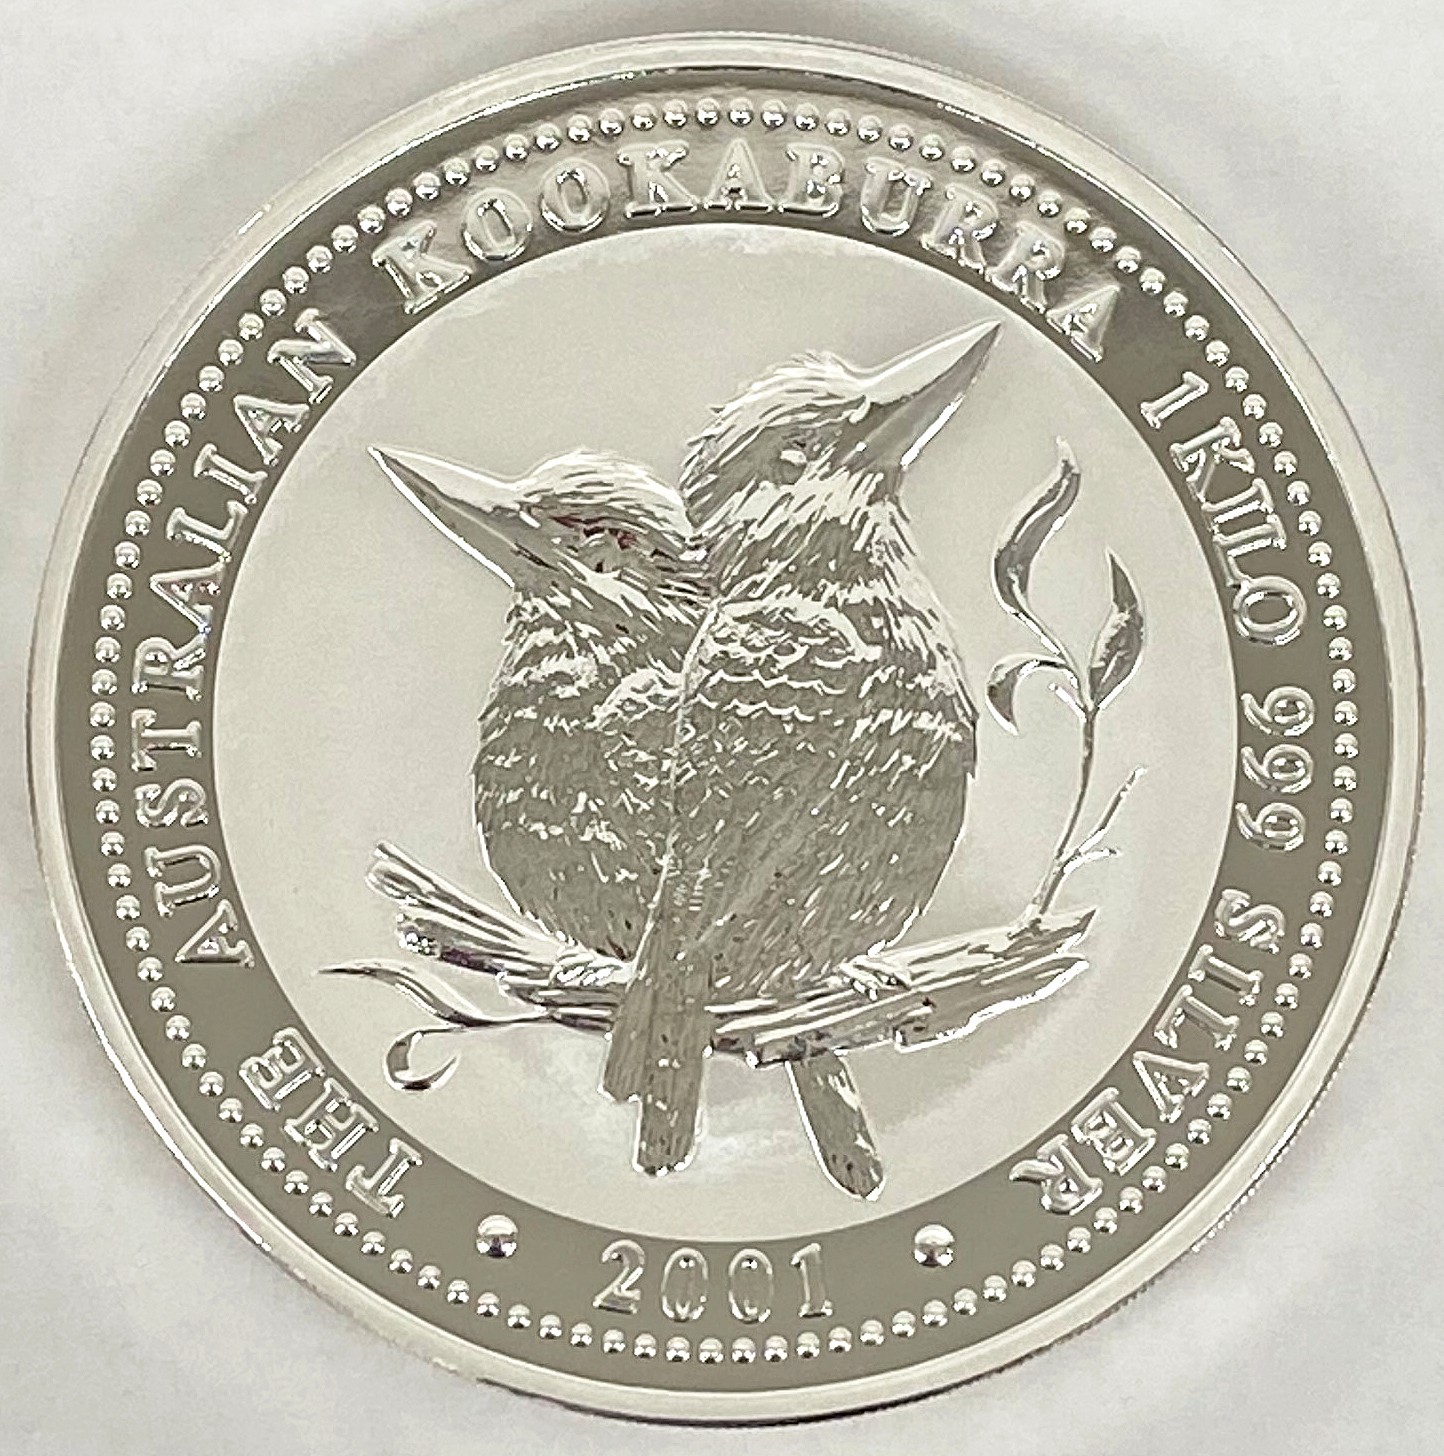 オーストラリア-Australia. ワライカワセミ鳥図 30ドル(1キロ)銀貨 